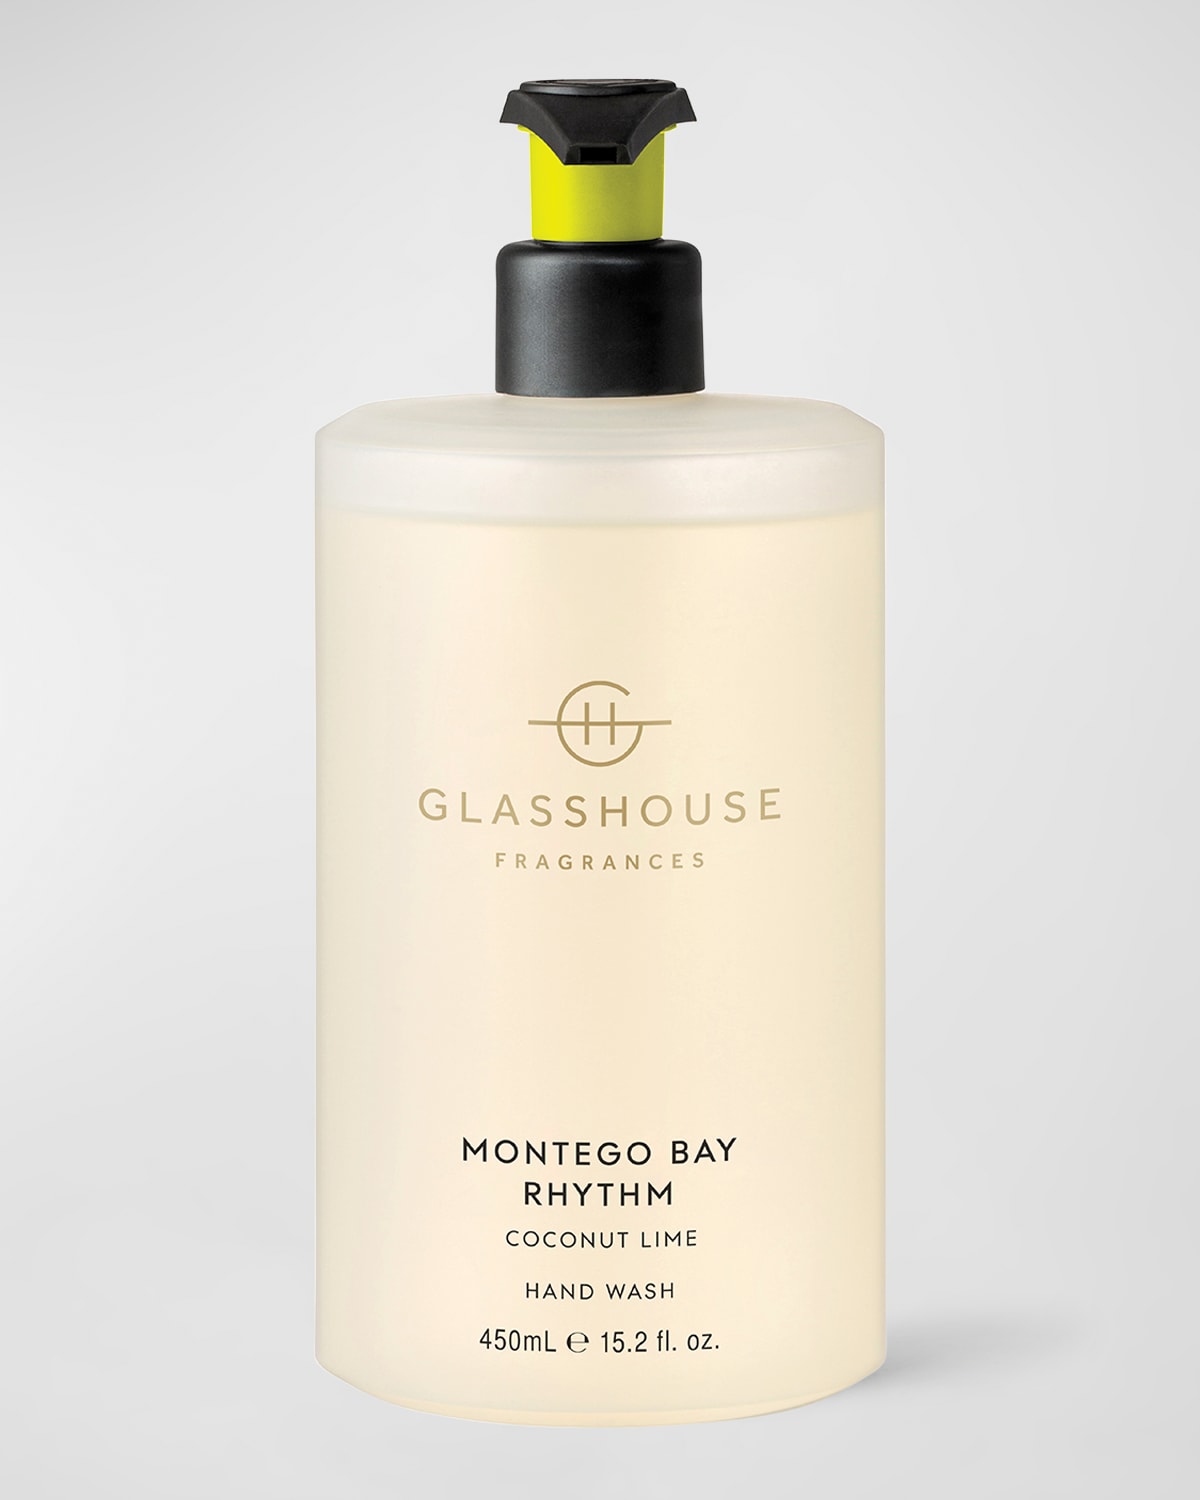 GLASSHOUSE FRAGRANCES 15.2 oz. Montego Bay Rhythm Hand Wash